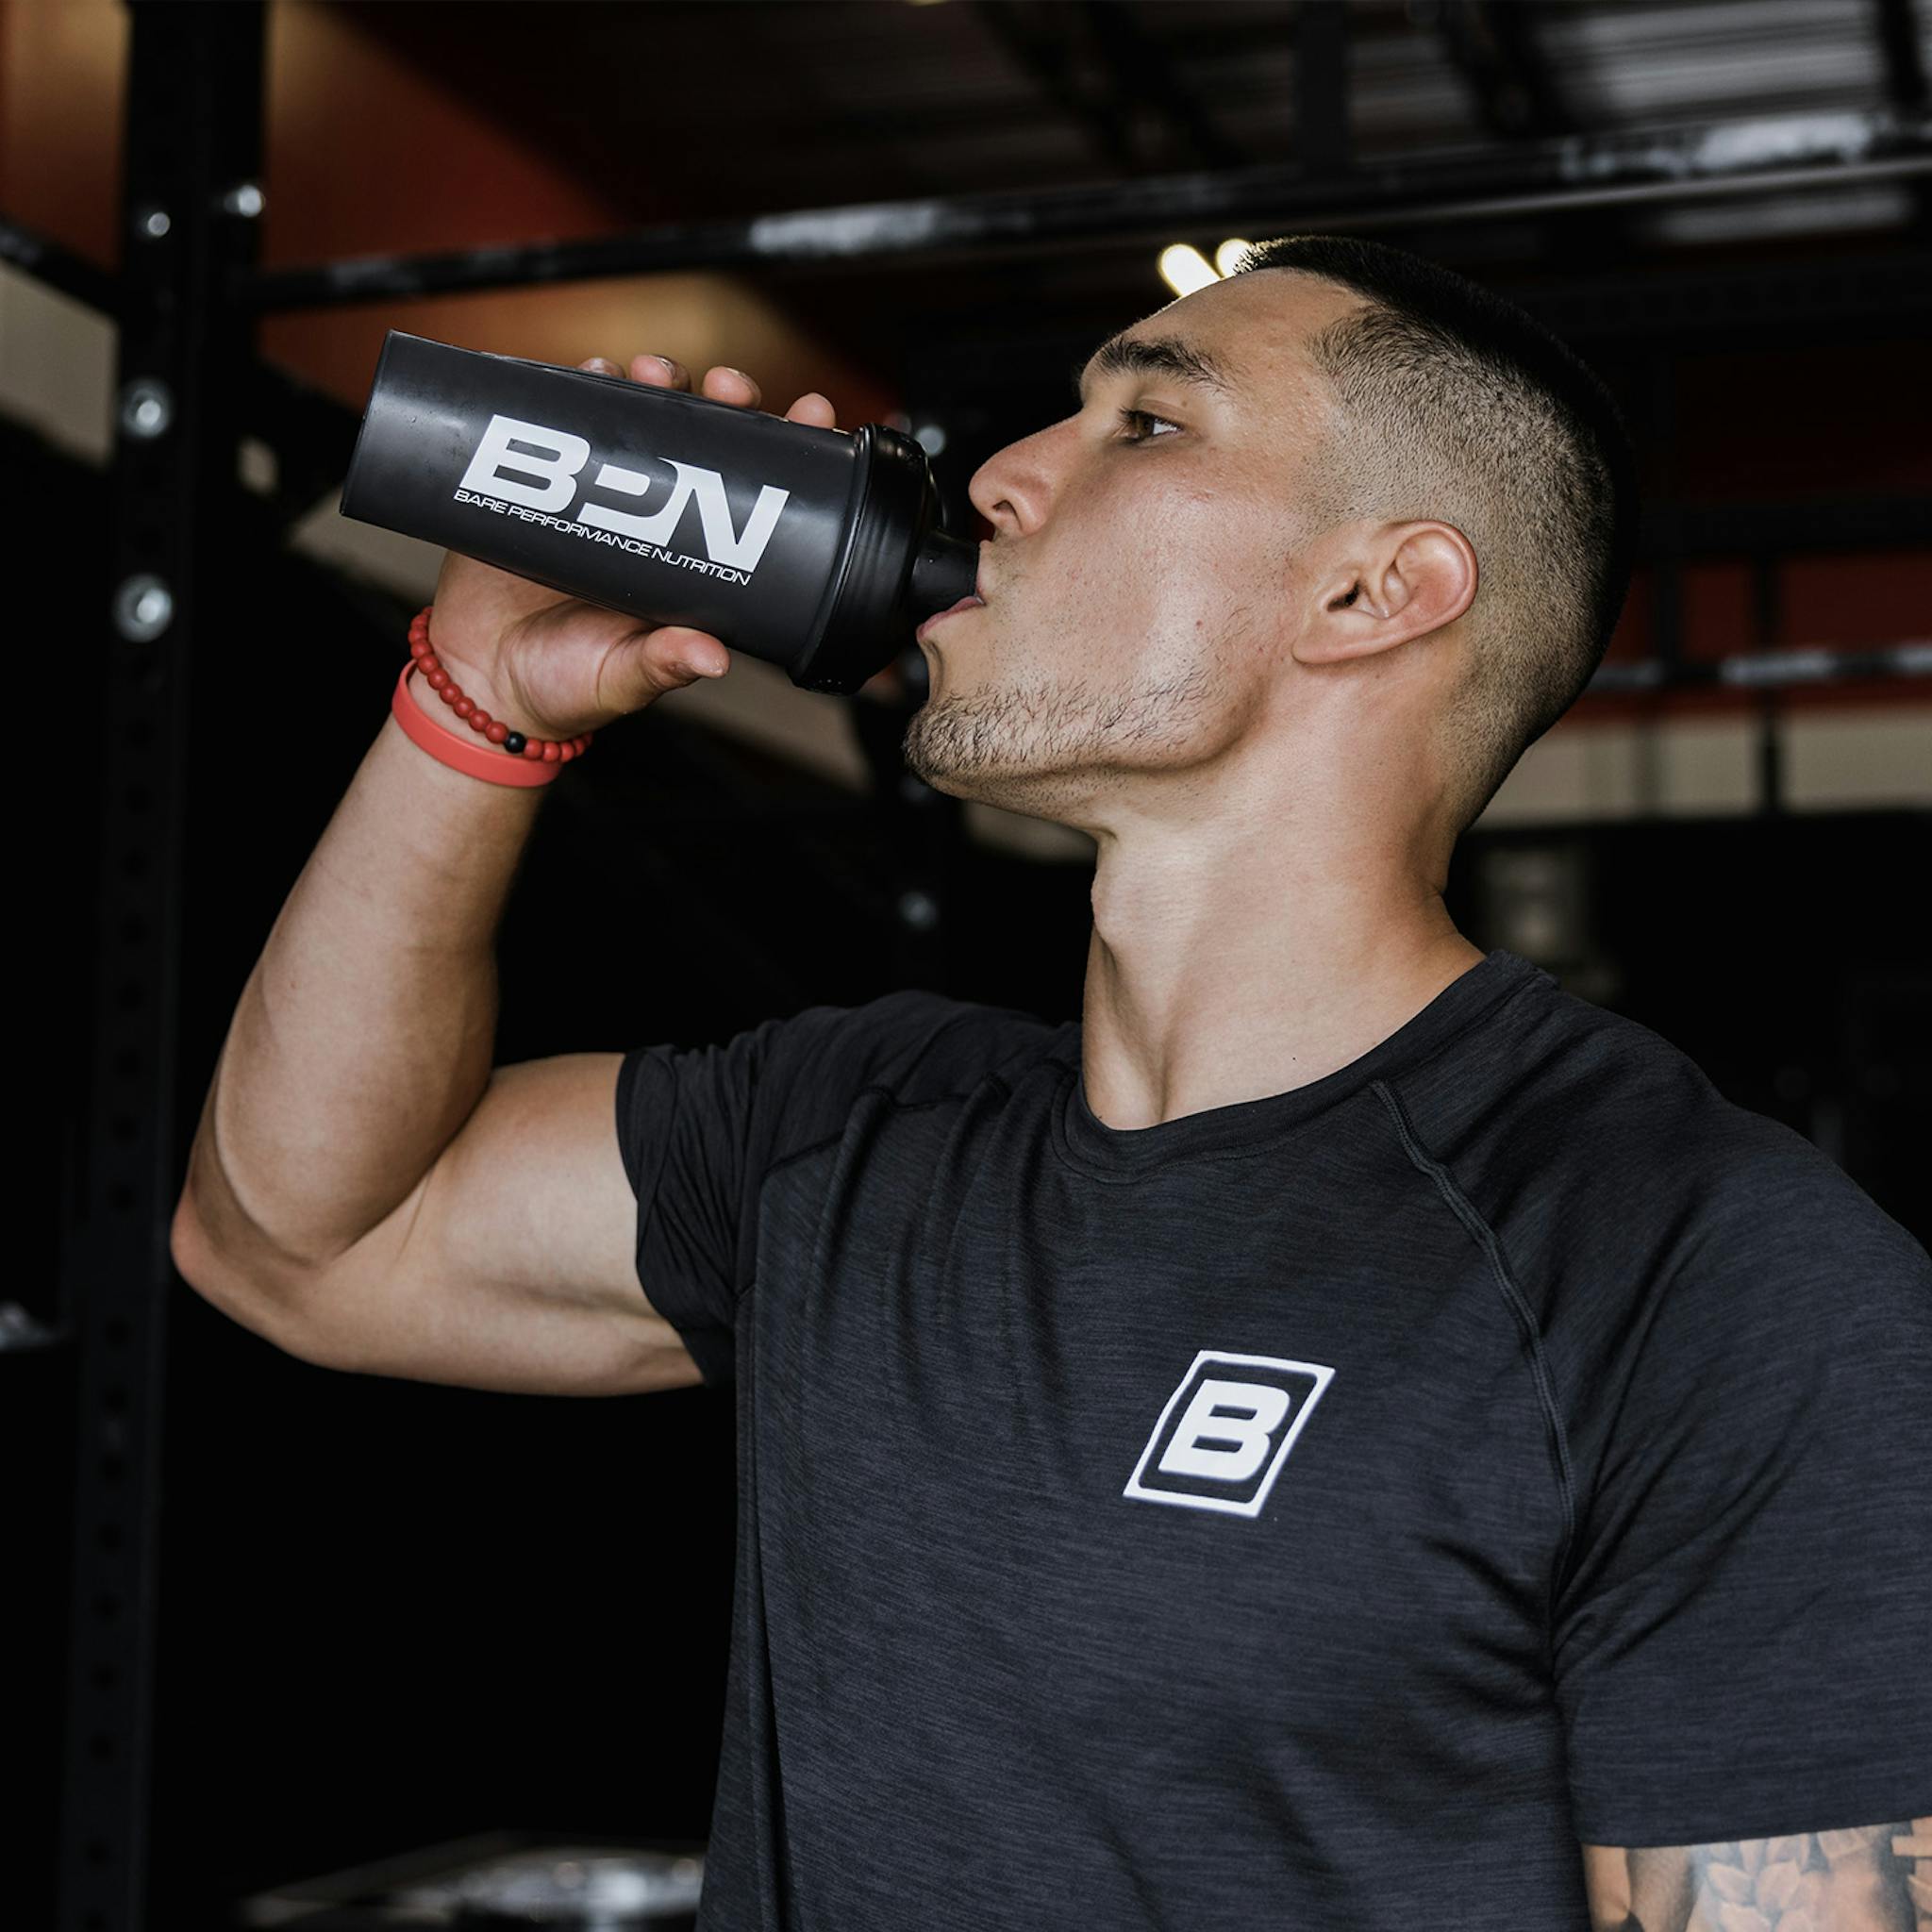 Shaker Bottle / Go One More 28oz – Bare Performance Nutrition